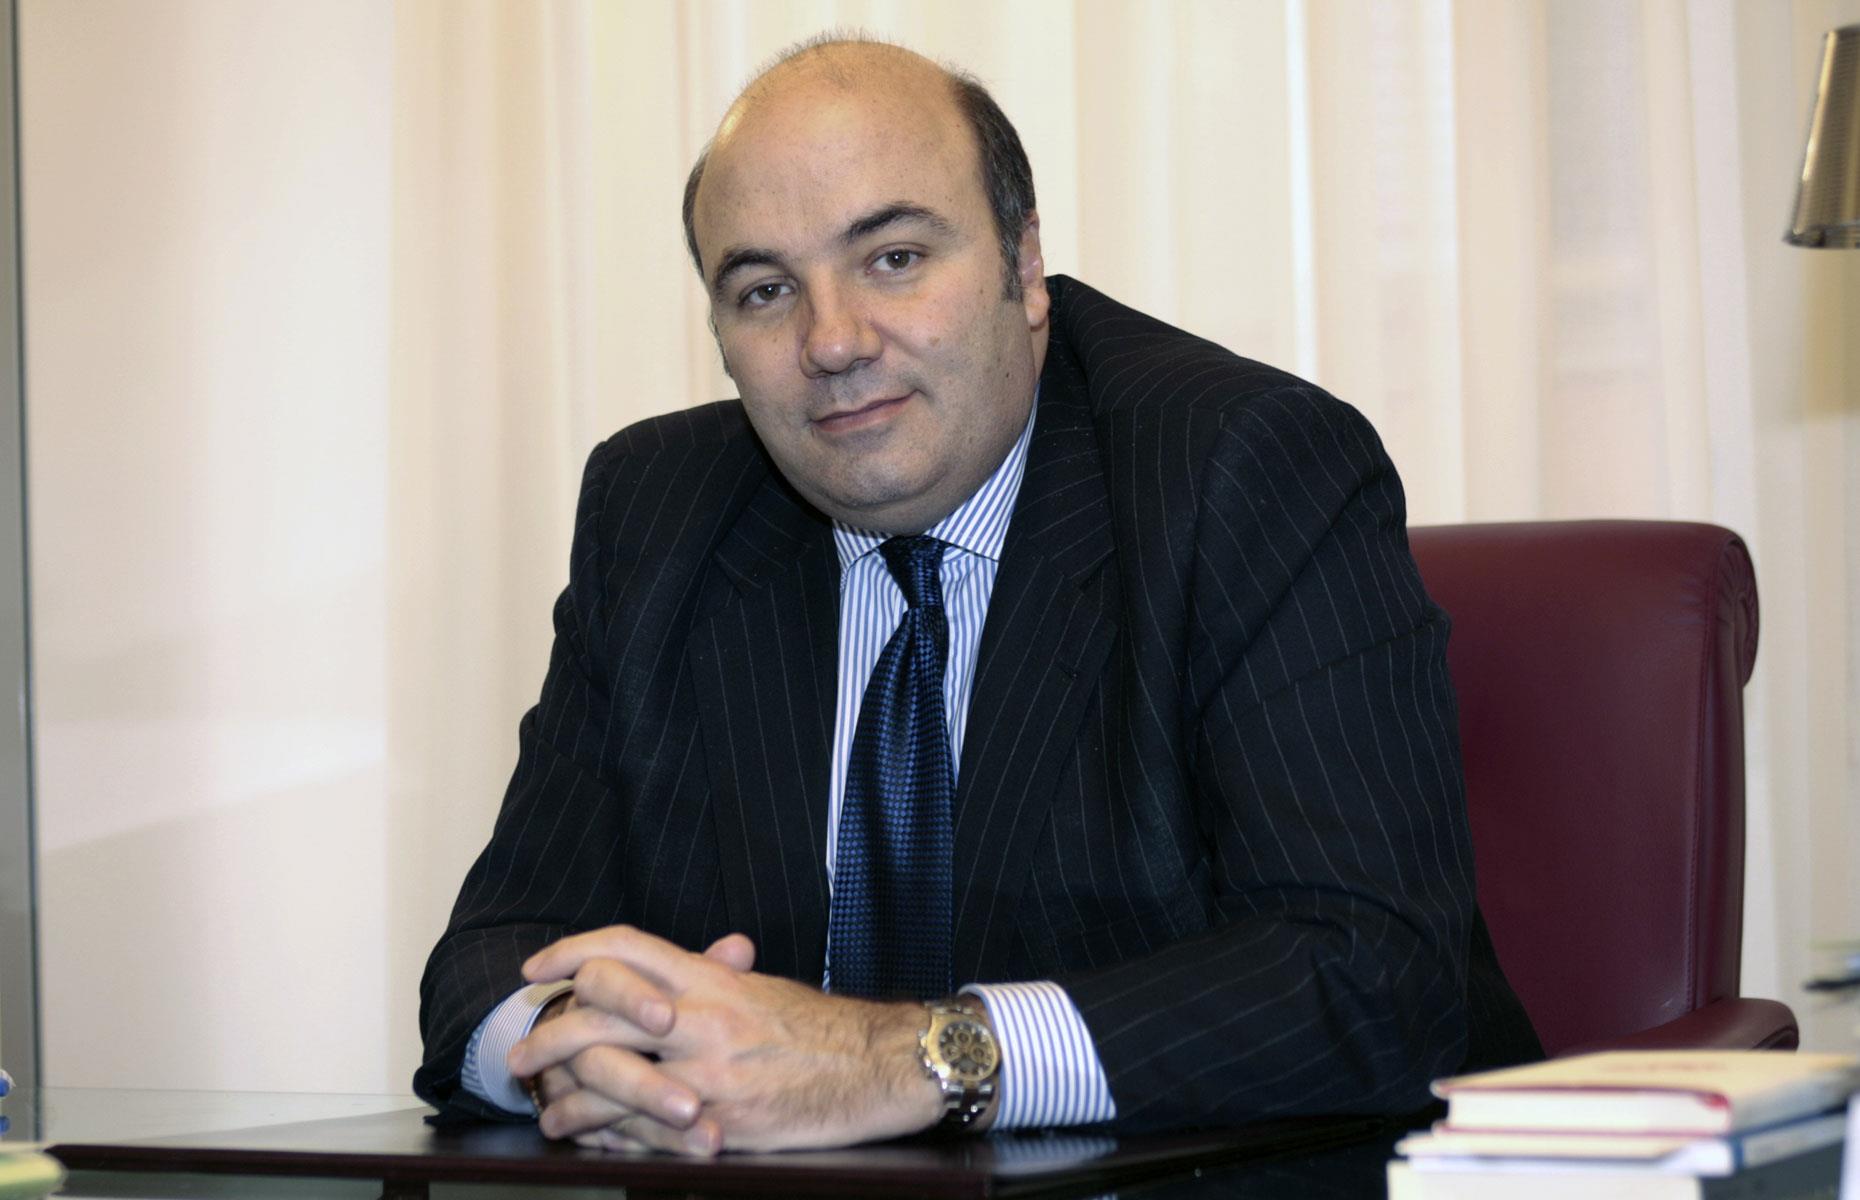 Fabrizio Viola – CEO, Monte dei Paschi di Siena Bank